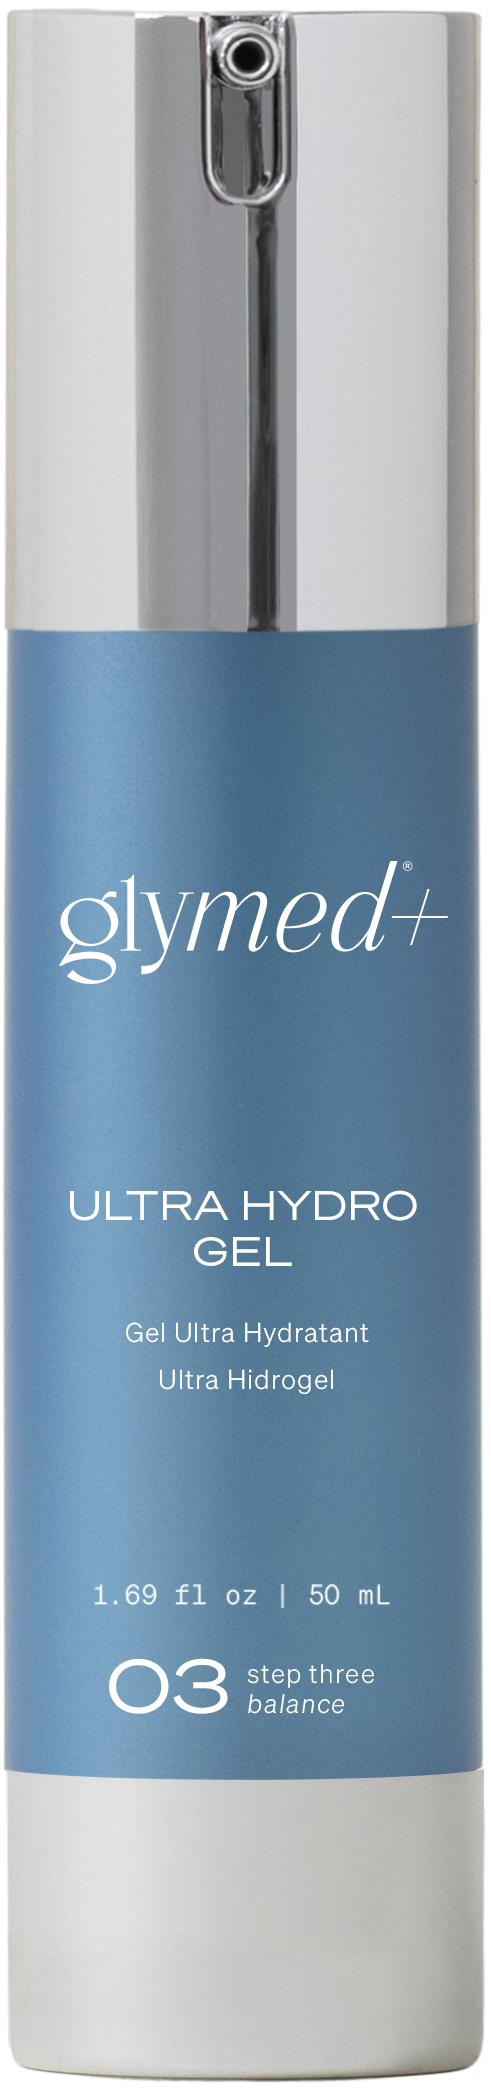 Ultra Hydro Gel